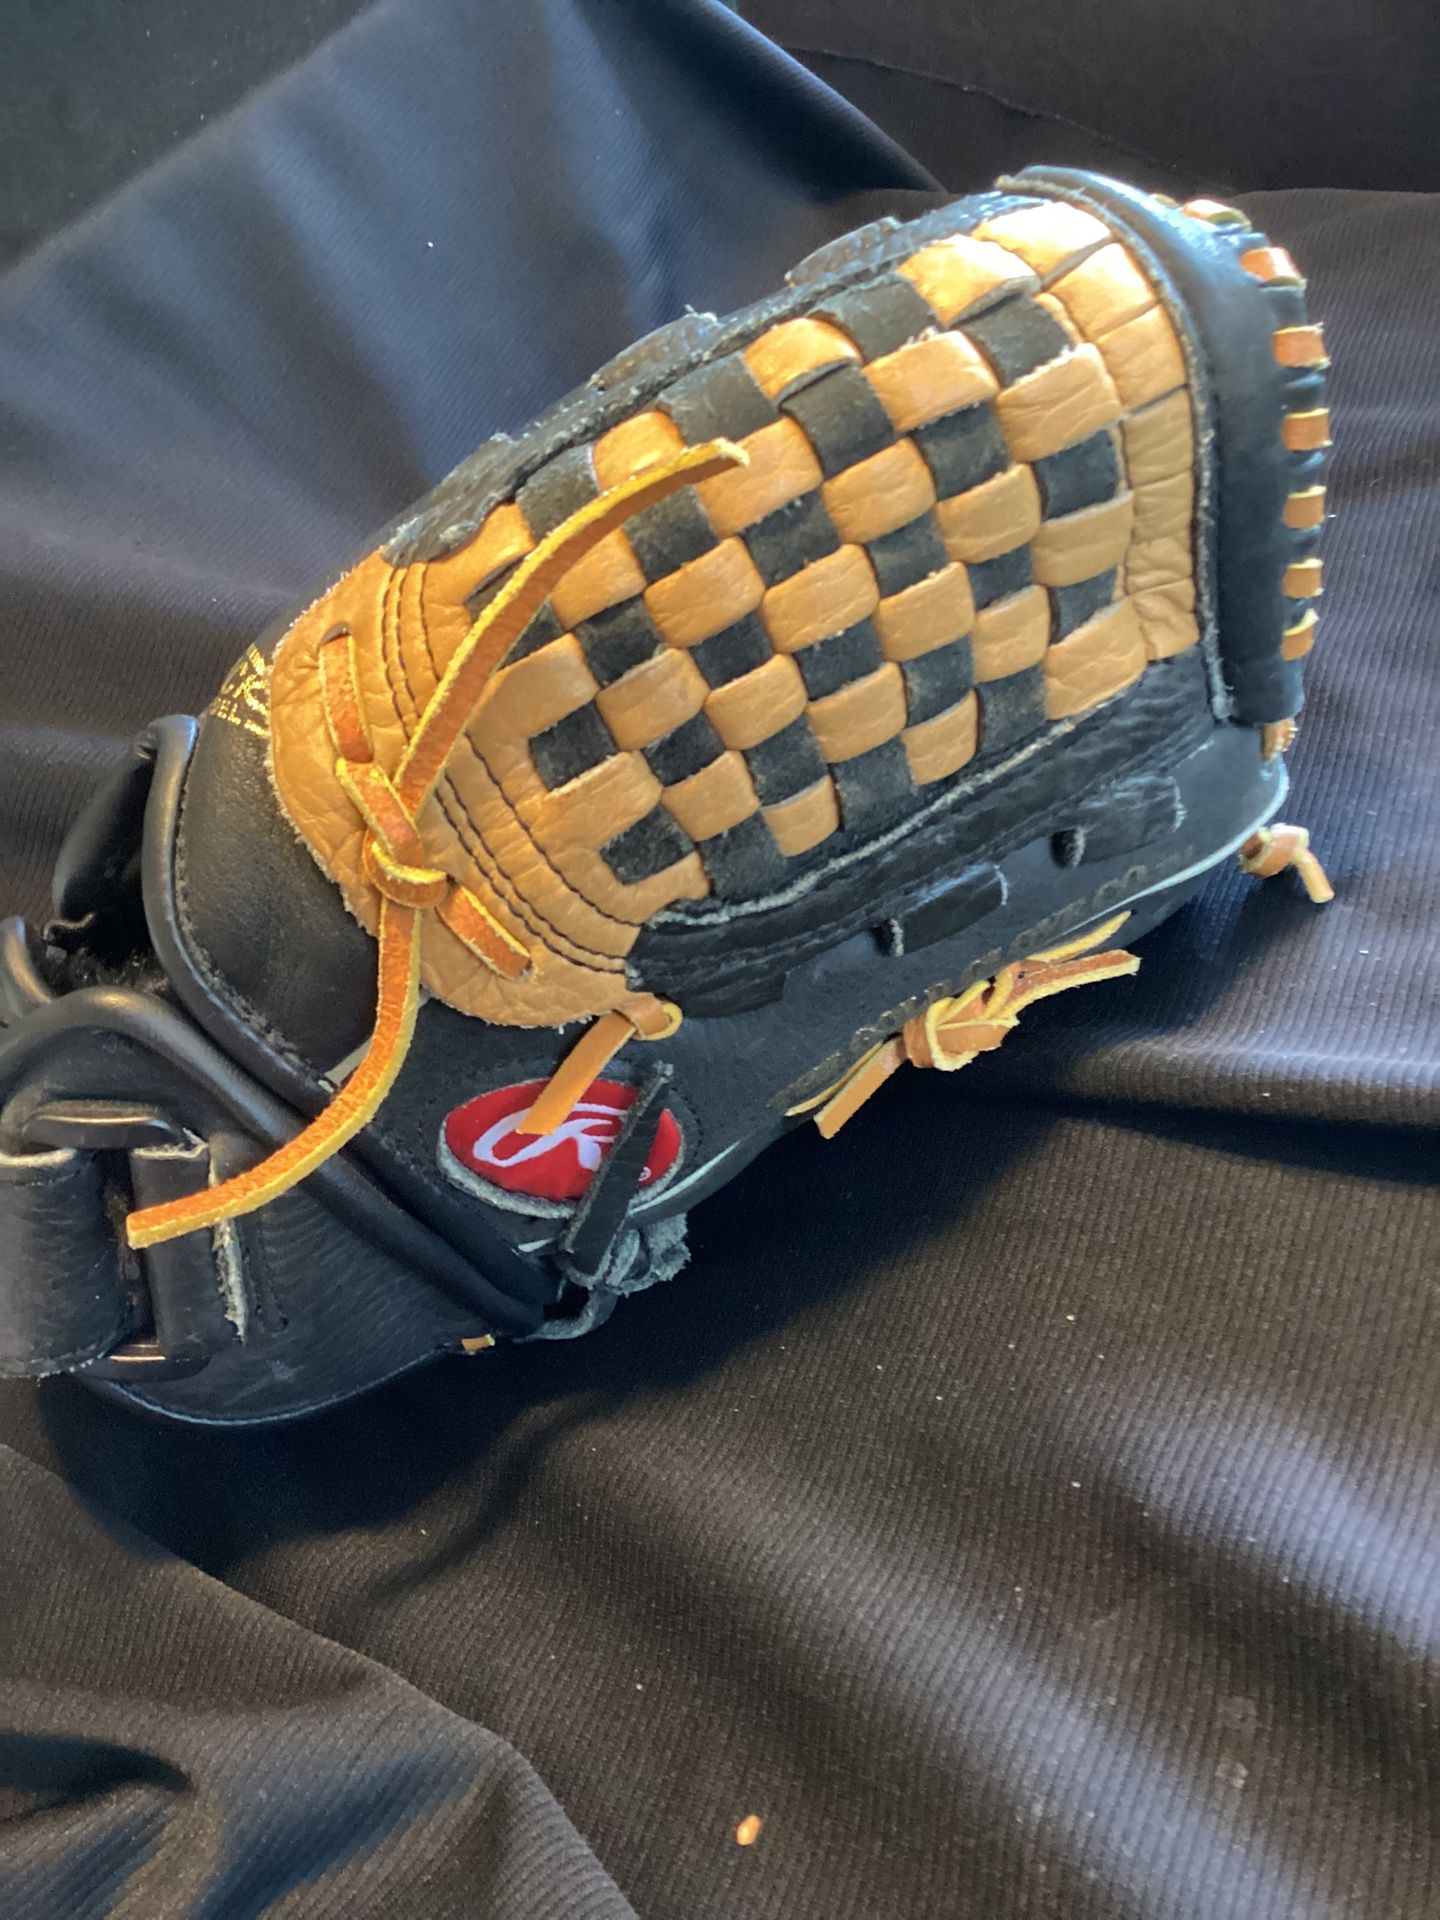 Rawlings 11 Inch Baseball Glove.